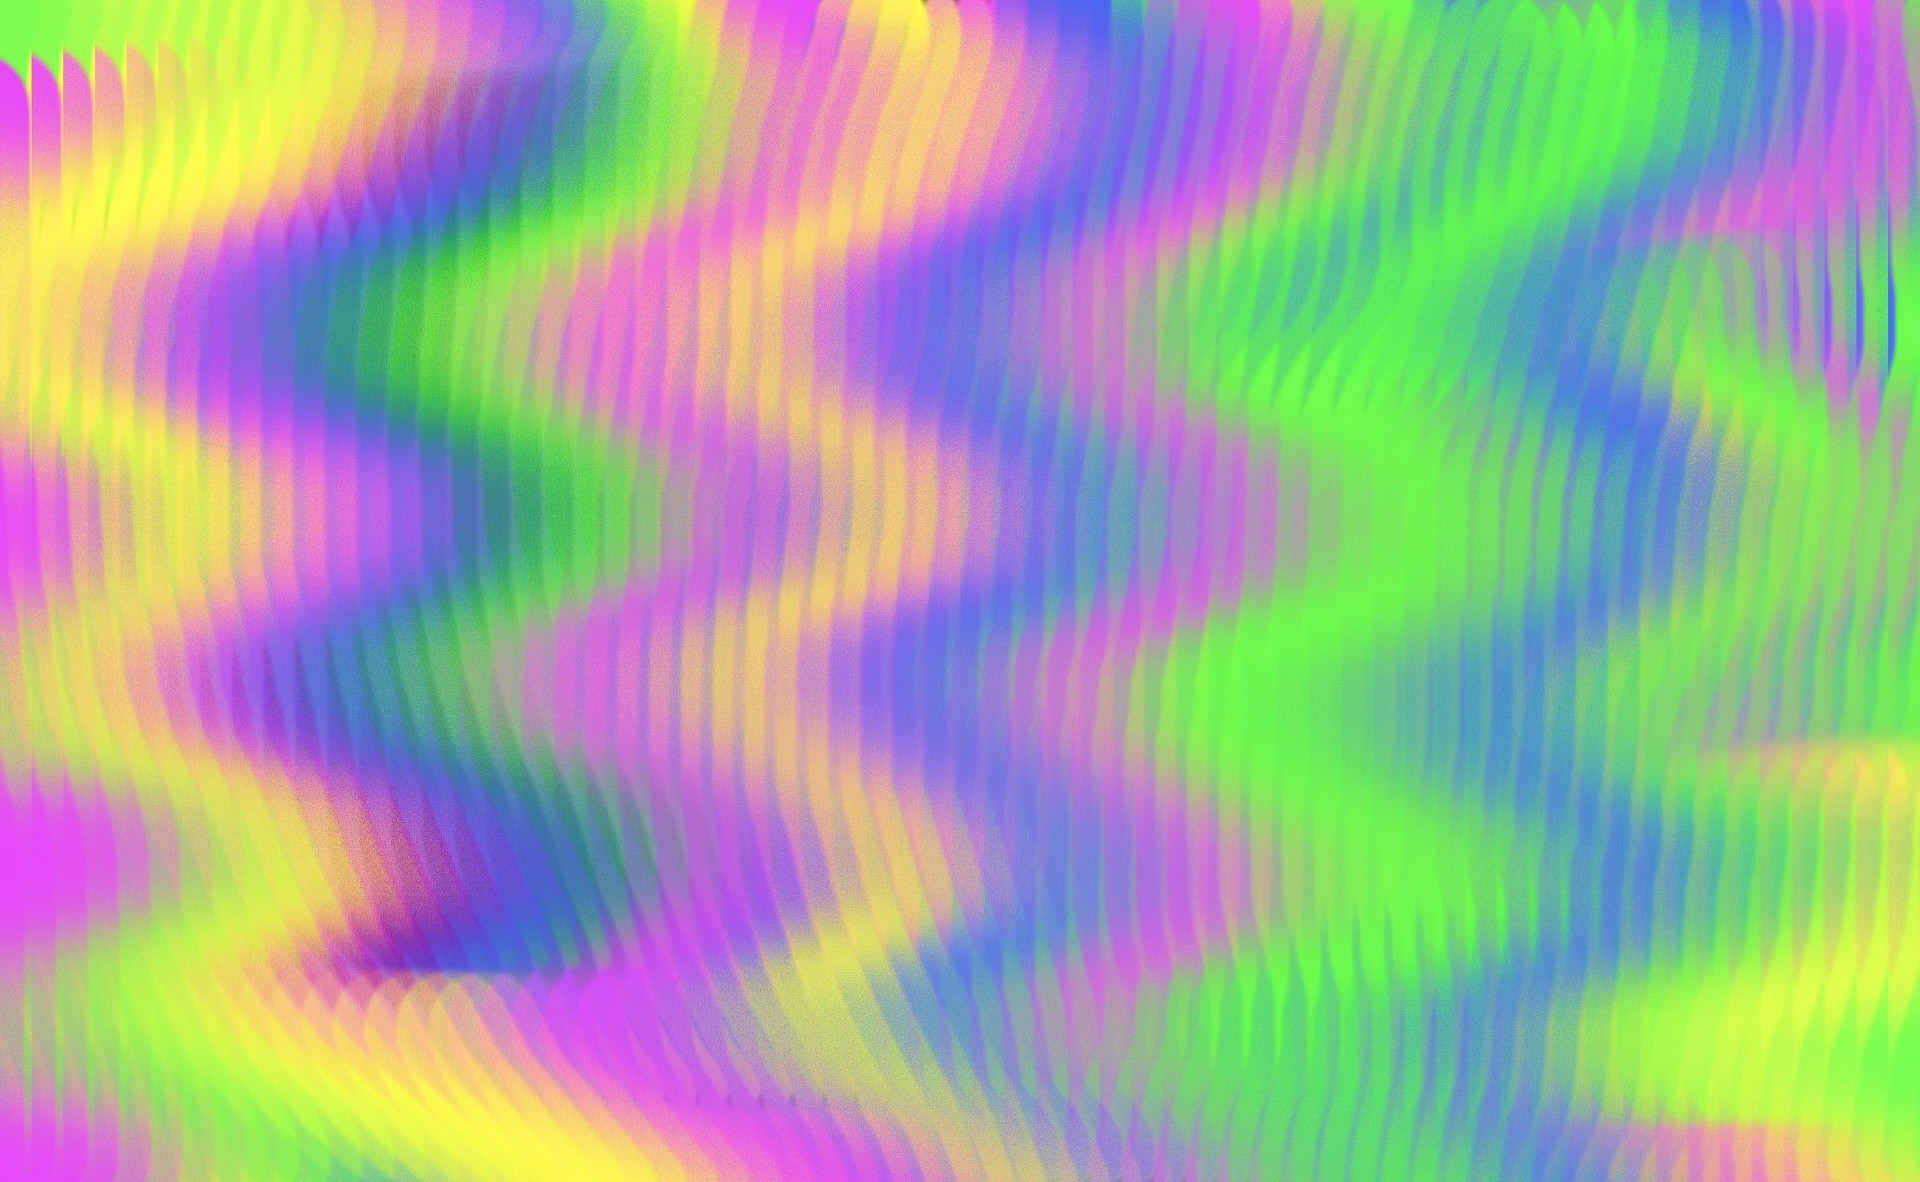 1920x1182 1920 x 1182 px, â½ 335 times. psychedelic abstract background colors  colorful ...